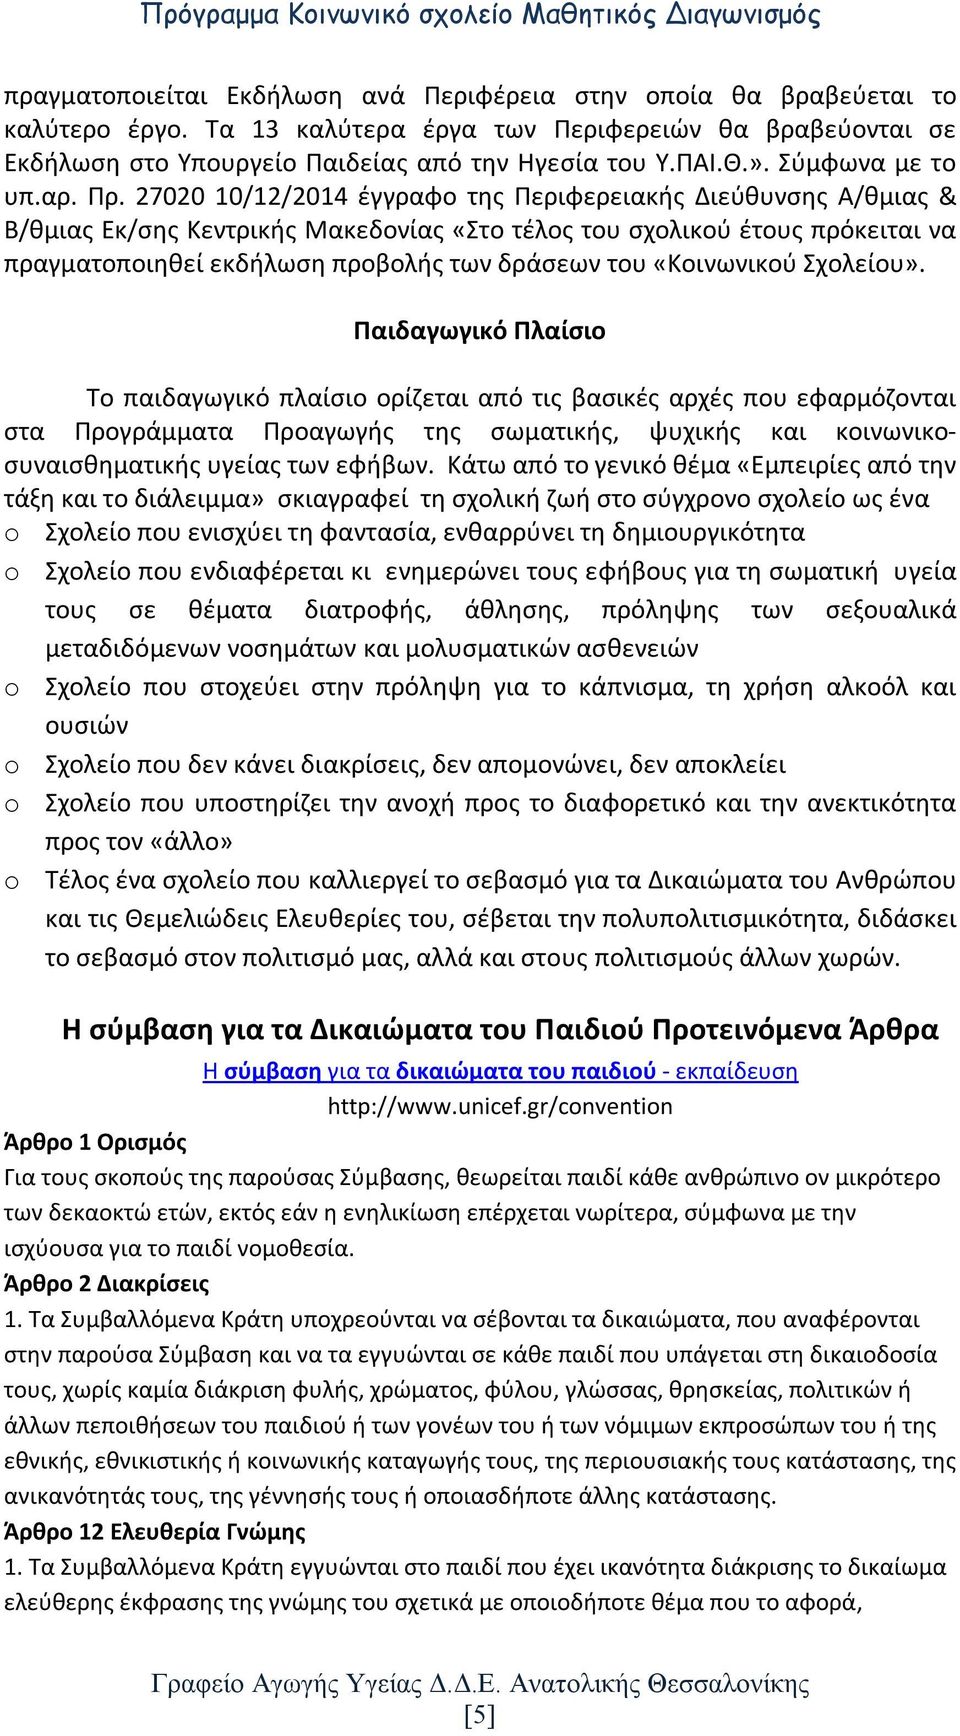 27020 10/12/2014 έγγραφο της Περιφερειακής Διεύθυνσης Α/θμιας & Β/θμιας Εκ/σης Κεντρικής Μακεδονίας «Στο τέλος του σχολικού έτους πρόκειται να πραγματοποιηθεί εκδήλωση προβολής των δράσεων του